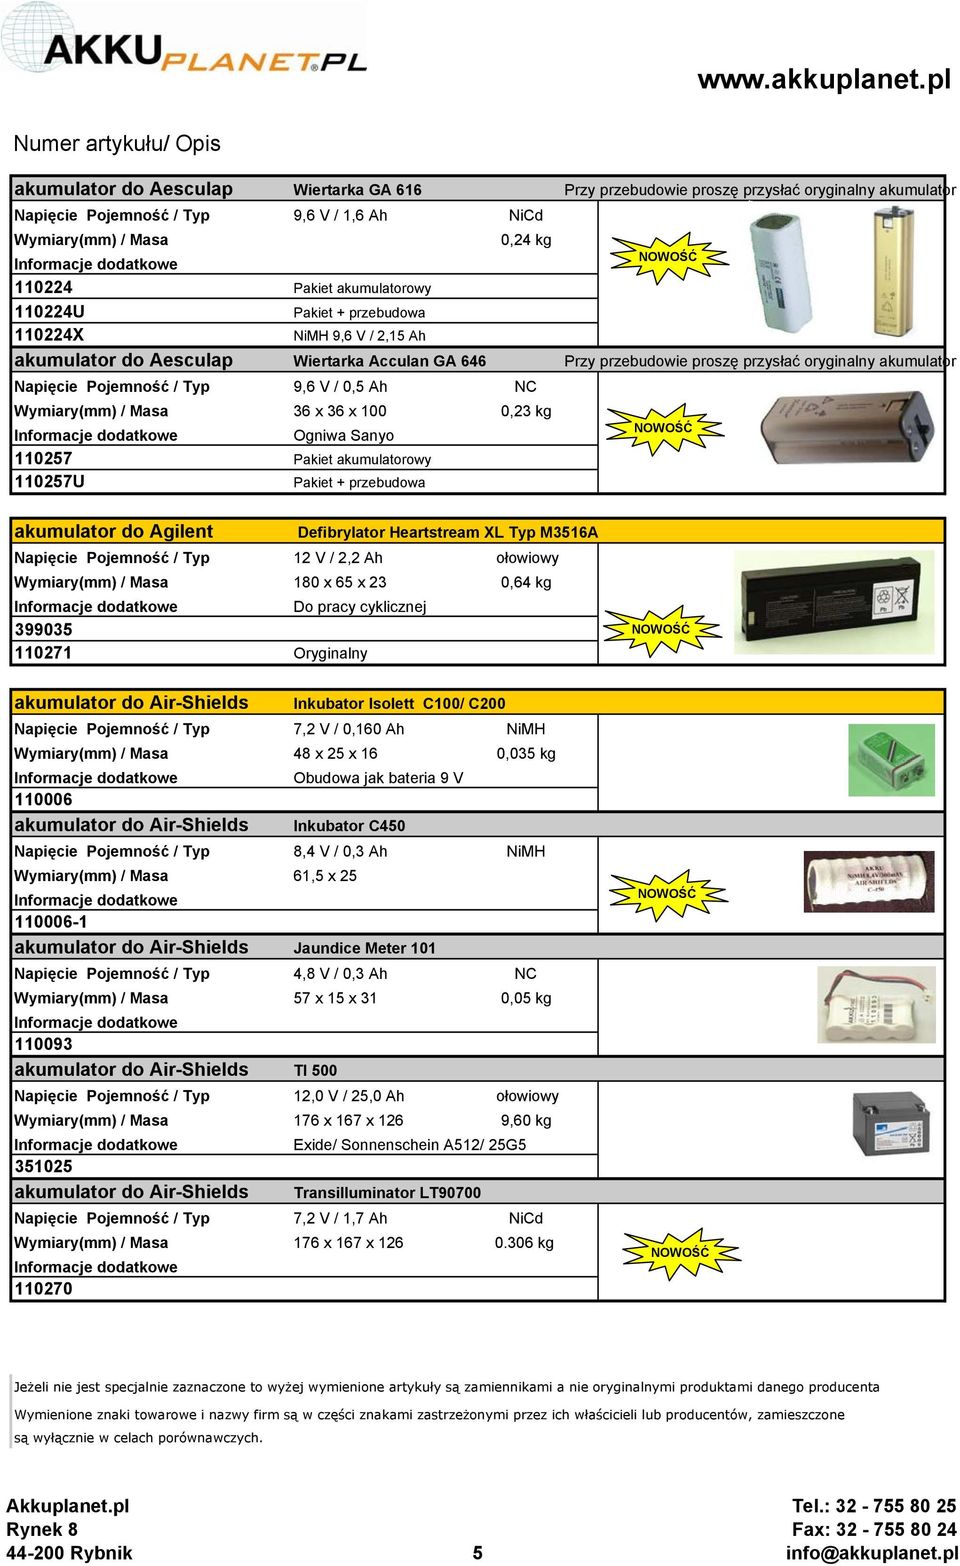 0,23 kg Ogniwa Sanyo 110257 Pakiet akumulatorowy 110257U Pakiet + przebudowa akumulator do Agilent Defibrylator Heartstream XL Typ M3516A Napięcie Pojemność / Typ 12 V / 2,2 Ah ołowiowy 180 x 65 x 23